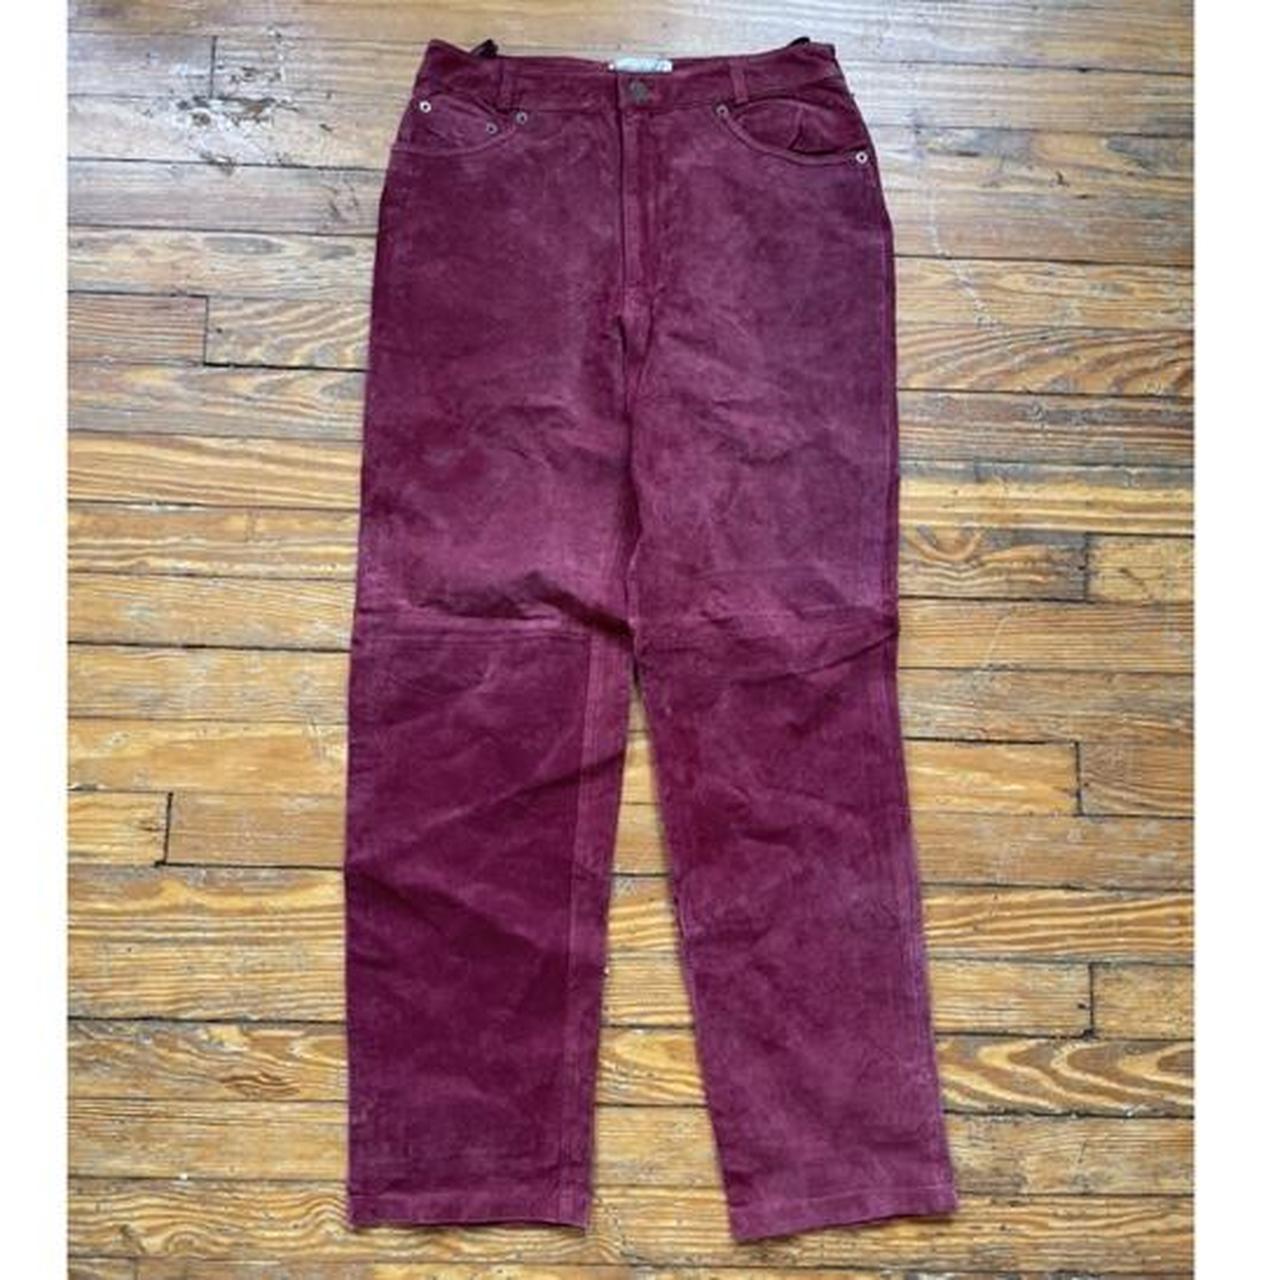 Bagatelle leather pants, size 10 Raspberry color - Depop